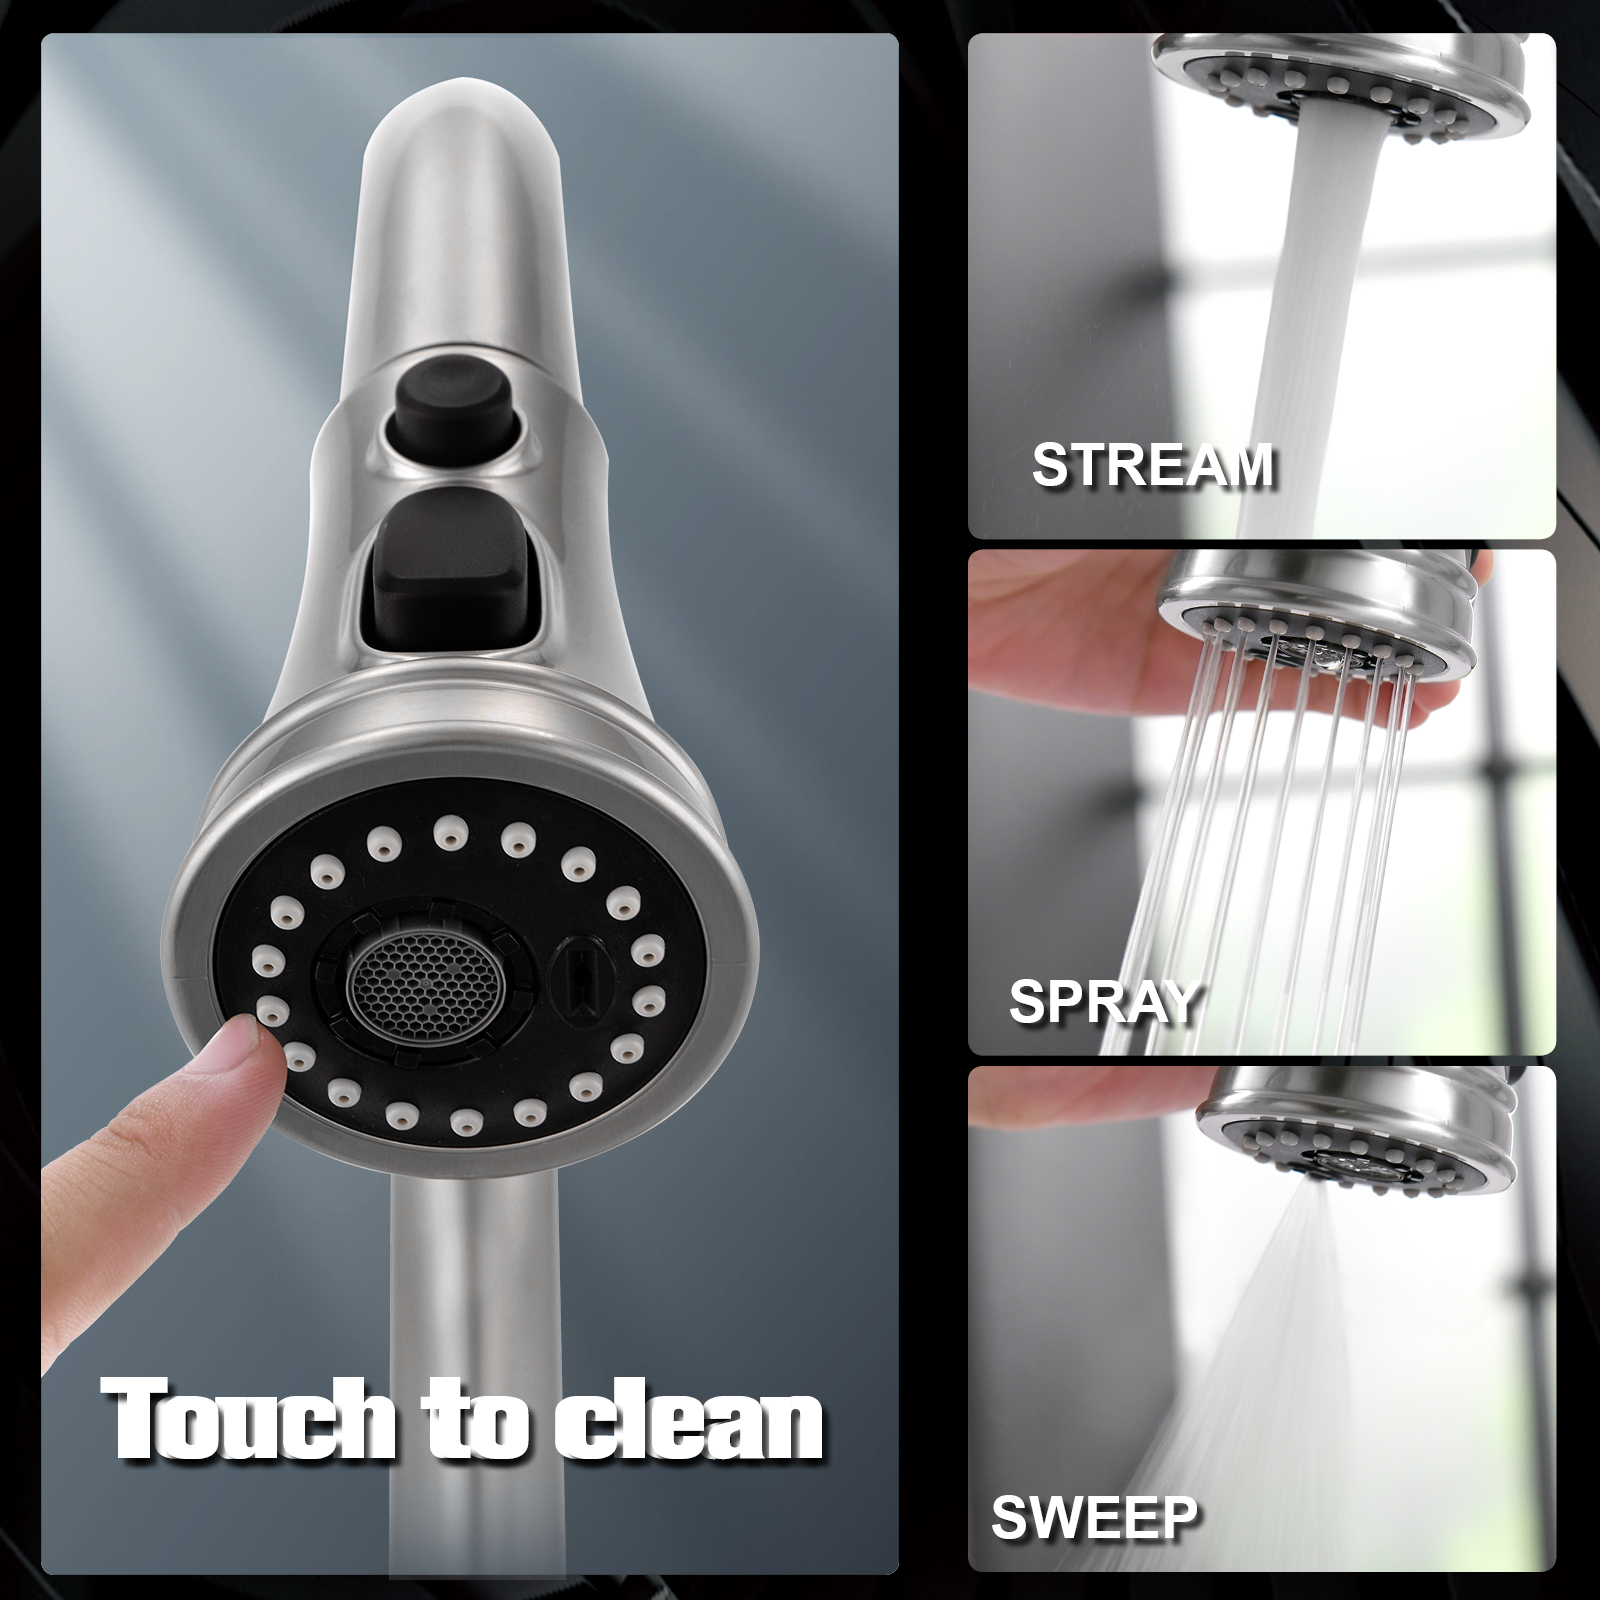 Smart Faucet Sensor Infrarrojo Motionsense Grifo de cocina Sensor táctil Grifo de cocina extraíble